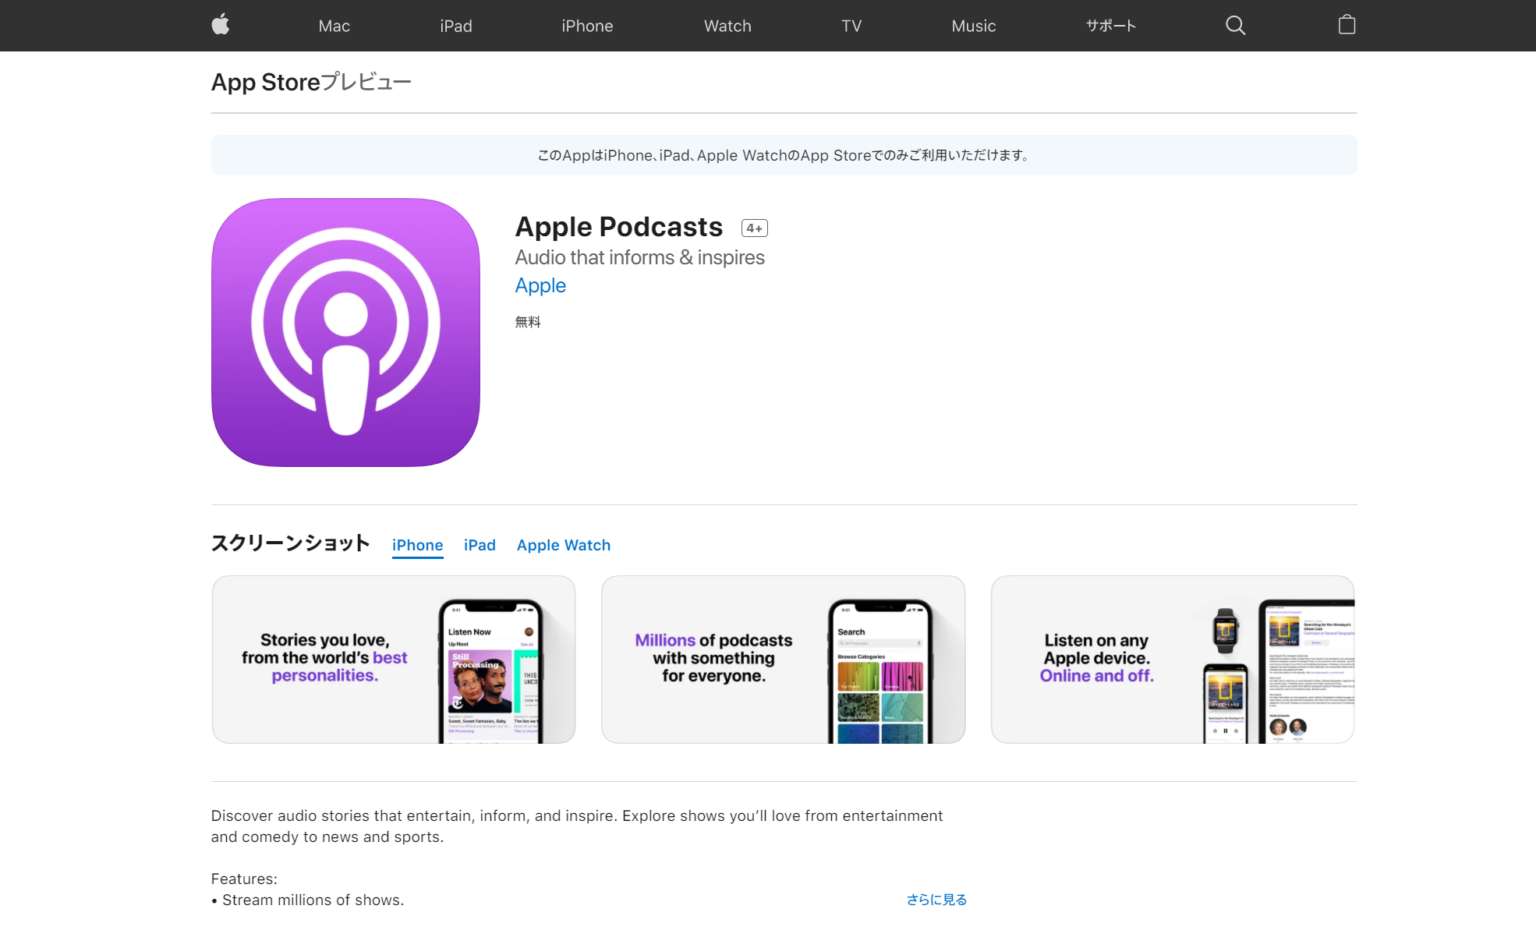 Apple Podcast (アップルポッドキャスト)